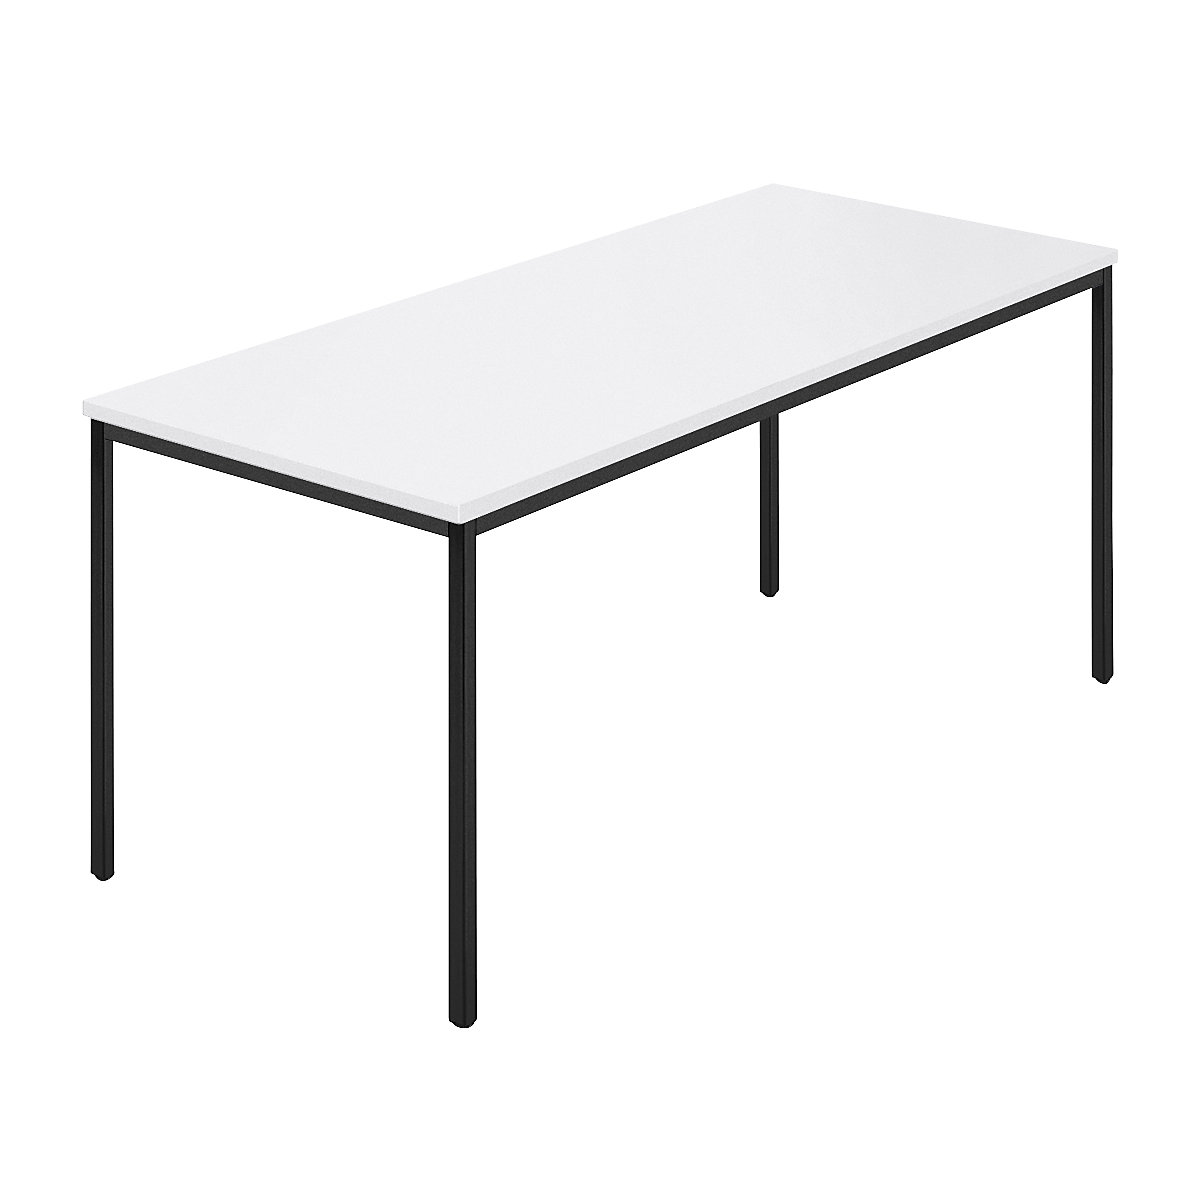 Table rectangulaire, tube carré plastifié, l x p 1600 x 800 mm, blanc / anthracite-7